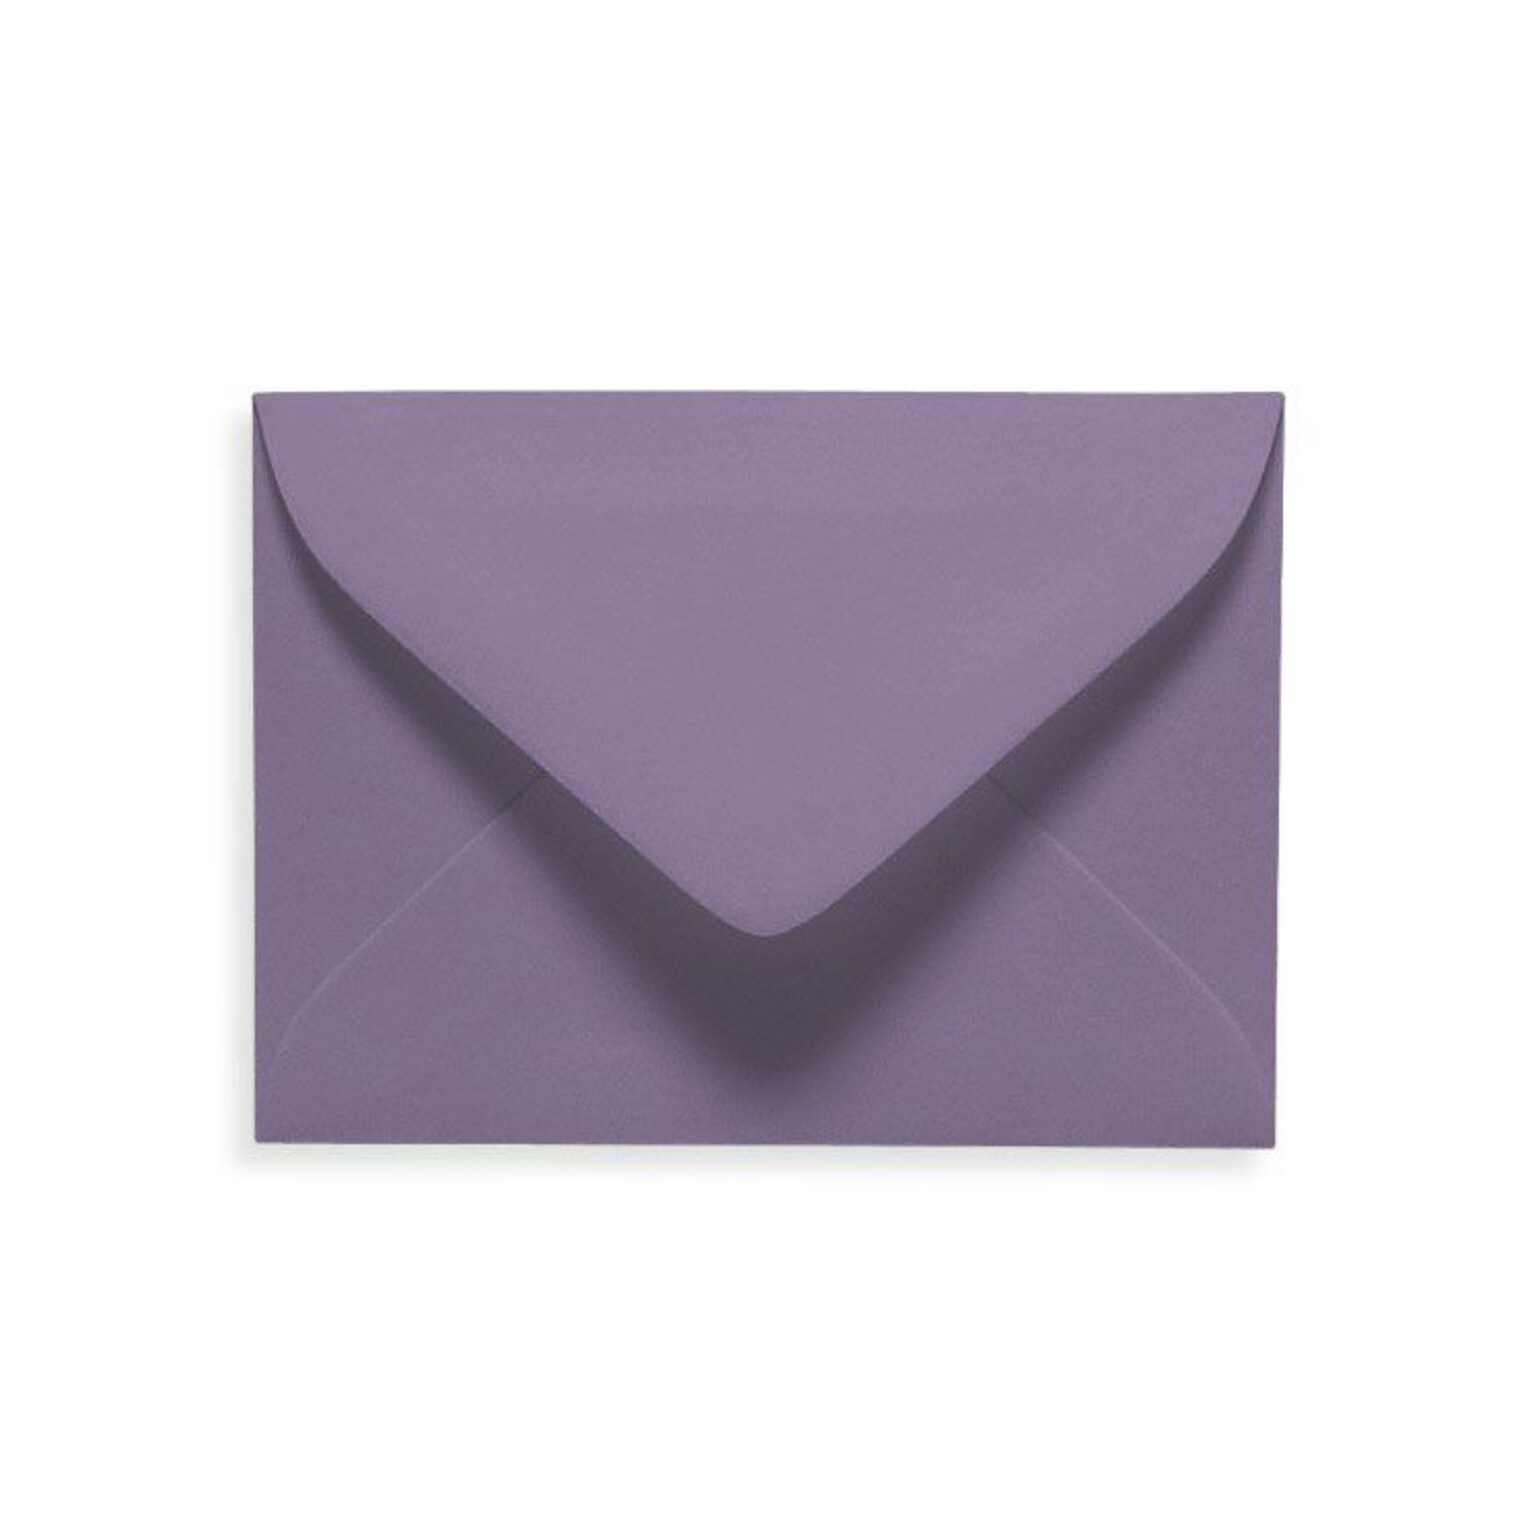 LUX #17 Mini Envelopes (2 11/16 x 3 11/16) 50/Box, Wisteria (LUXLEVC-106-50)